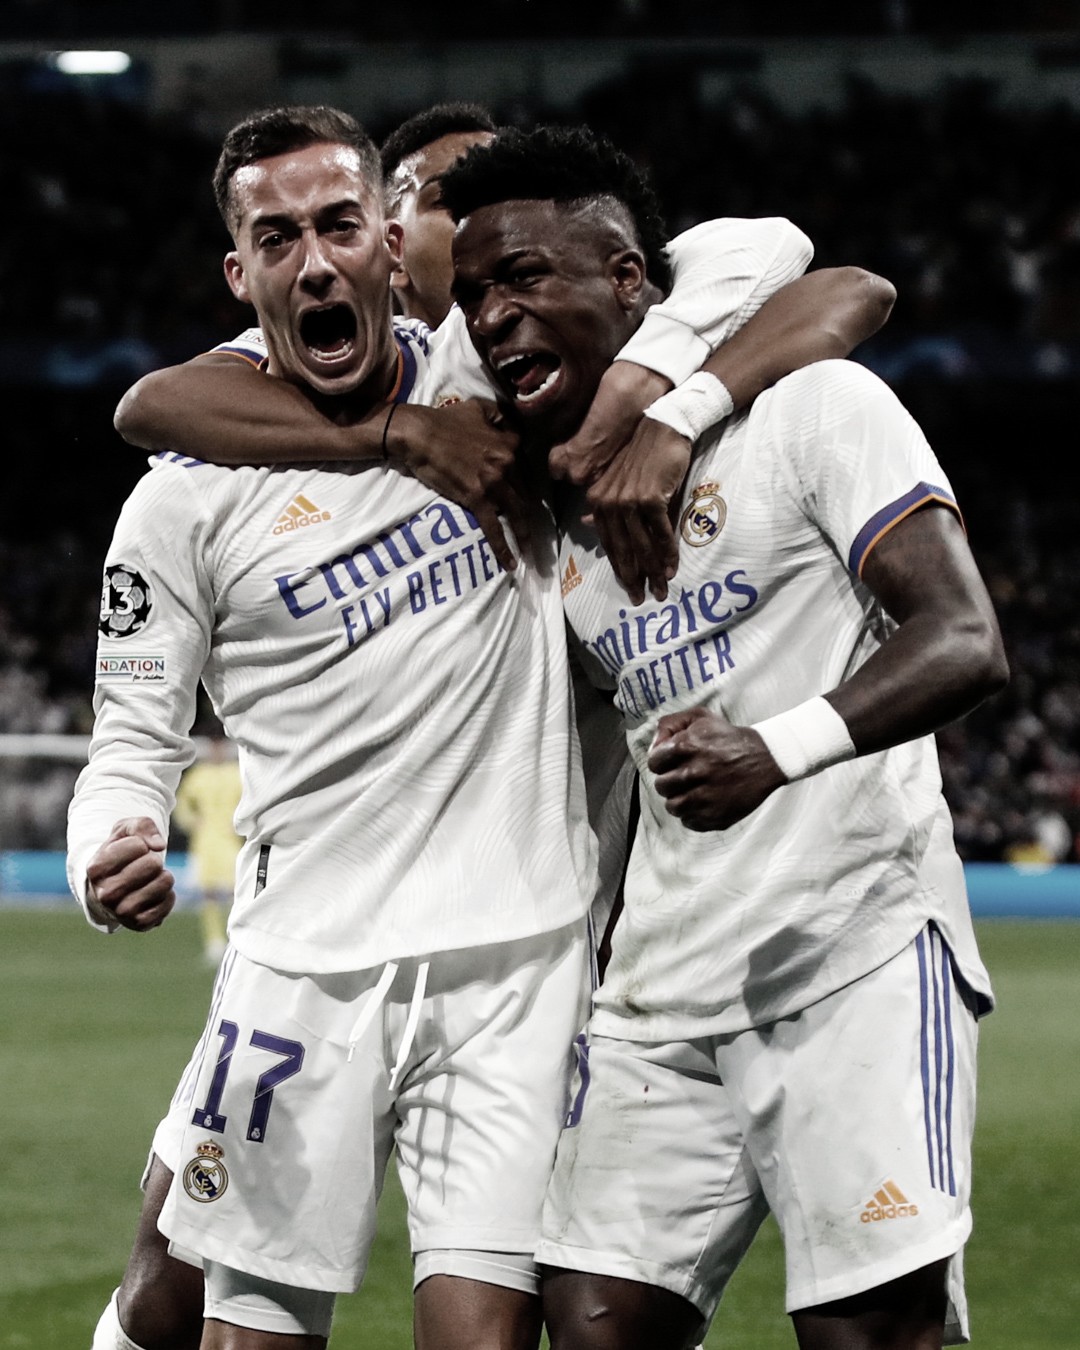 El ‘Matarreyes’ Real Madrid aparece de nuevo